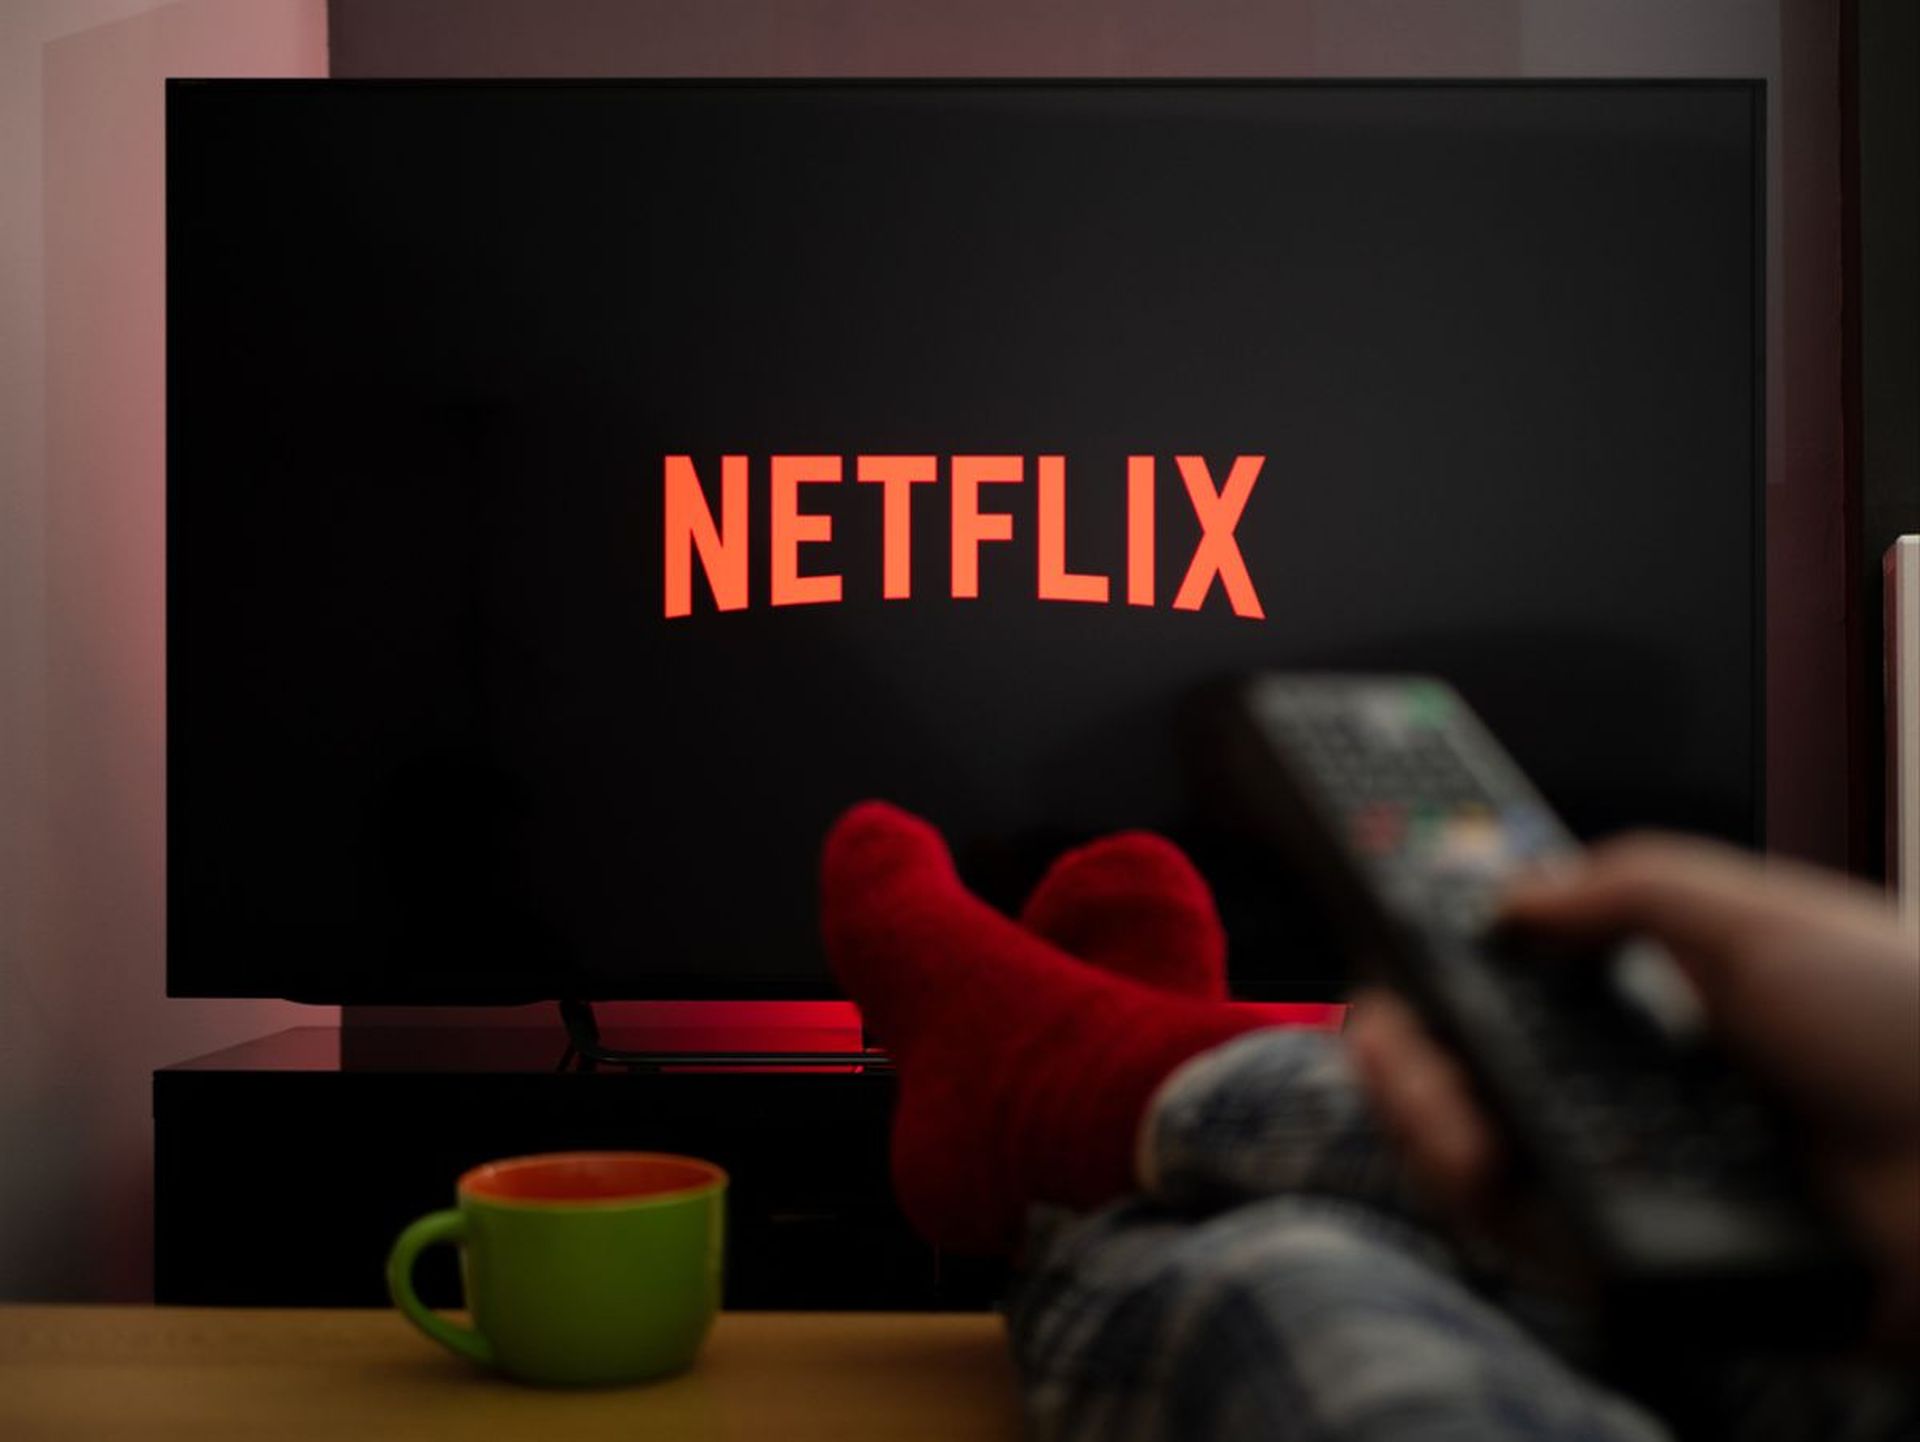 Is Microsoft buying Netflix?